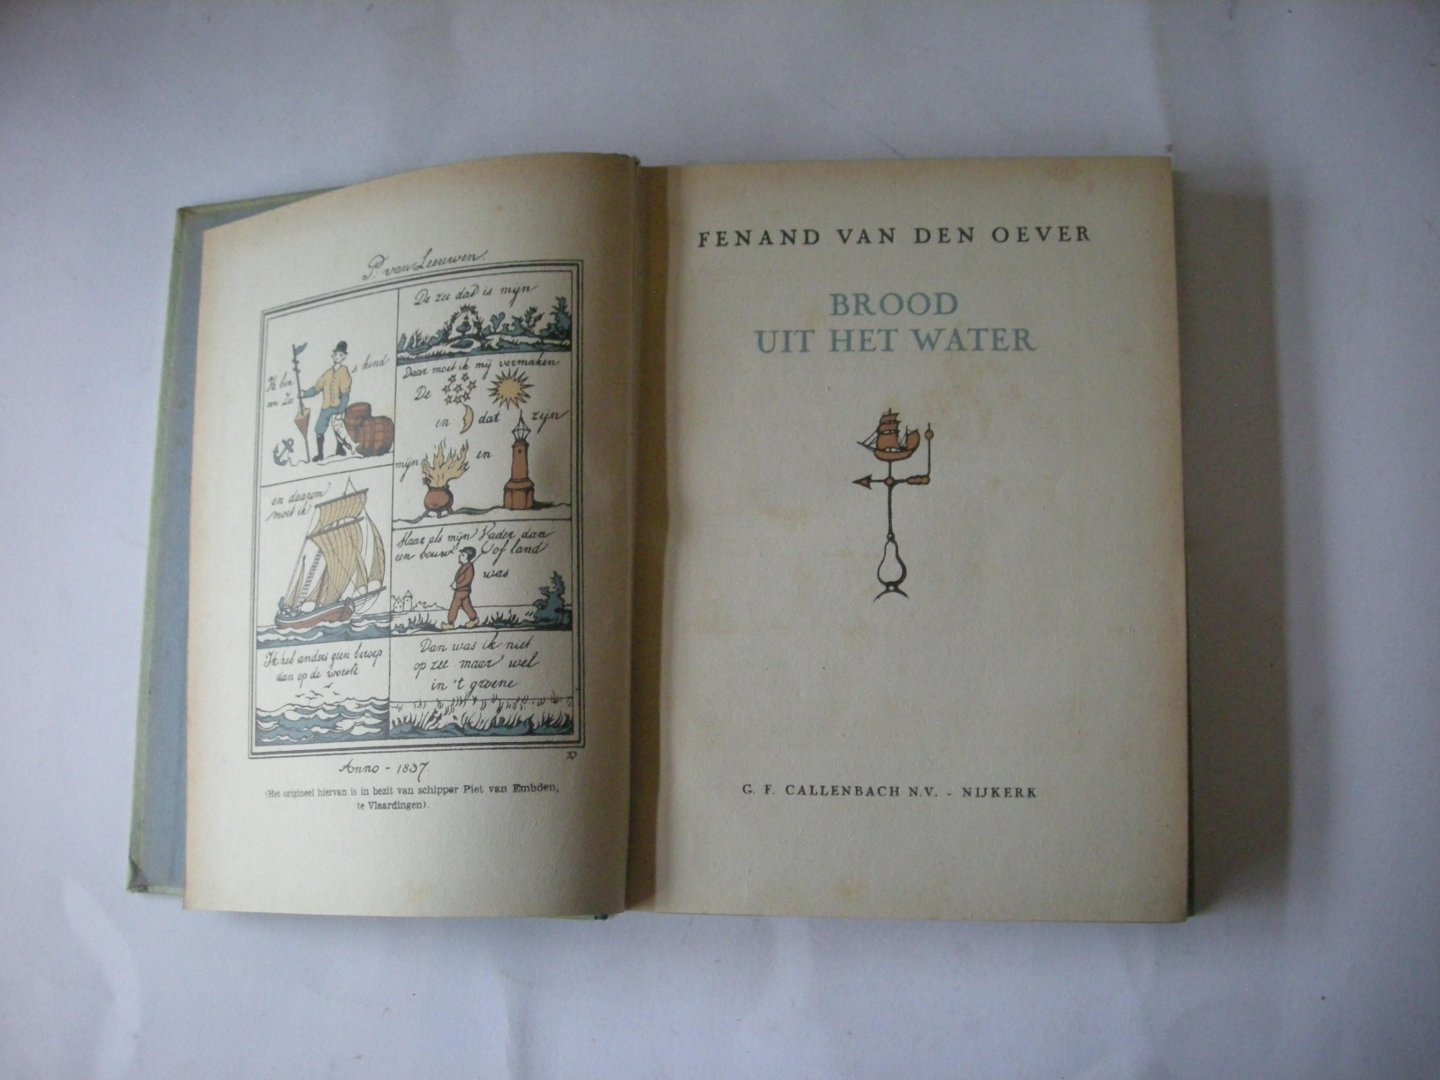 Oever, Fenand van den(ps Jaap Kolkman)  / Pieck, Anton, illustr. - Brood uit het water (Vlaardingen)